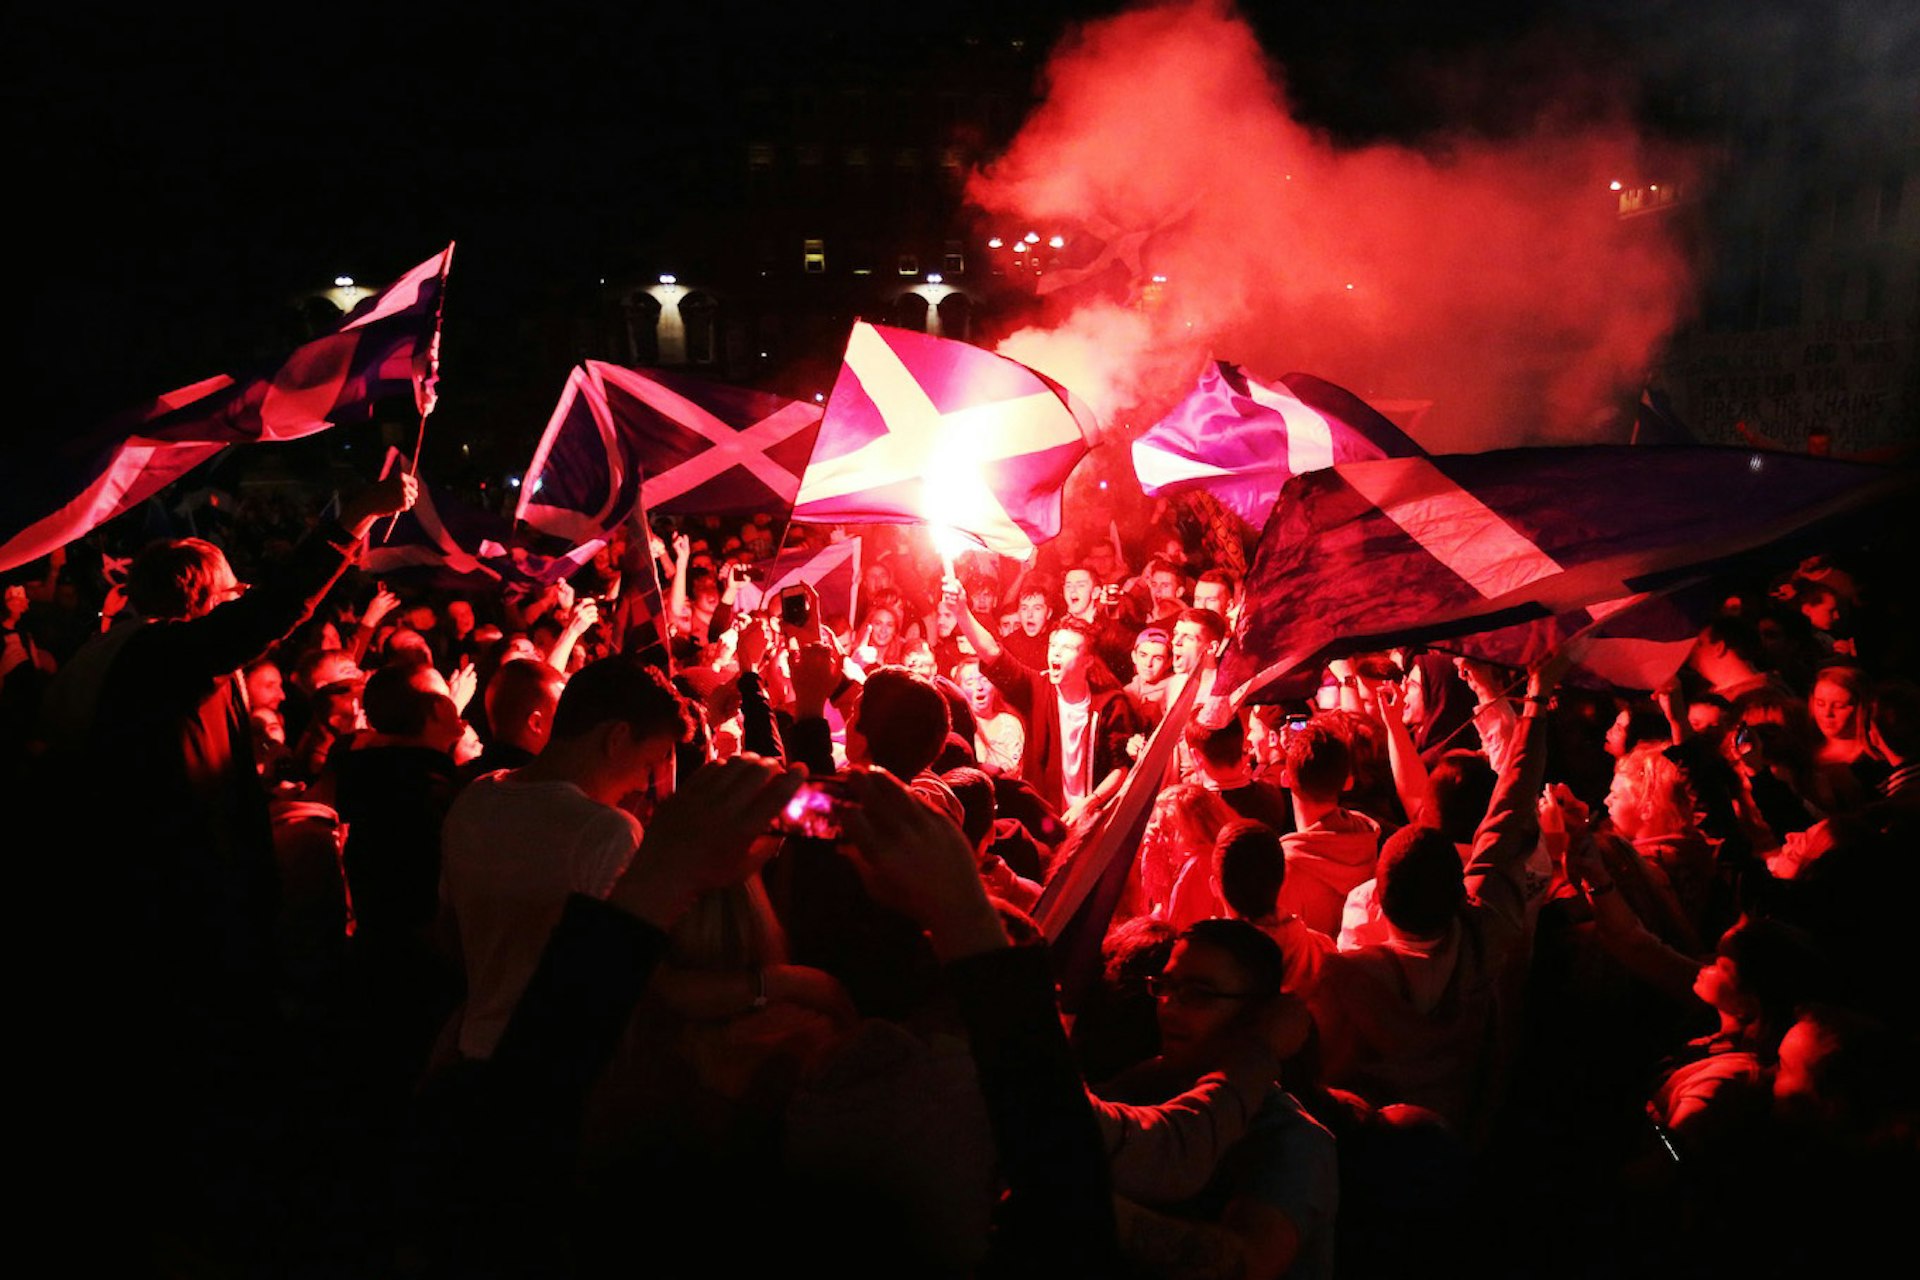 Great photography zine commemorates the Scottish independence referendum